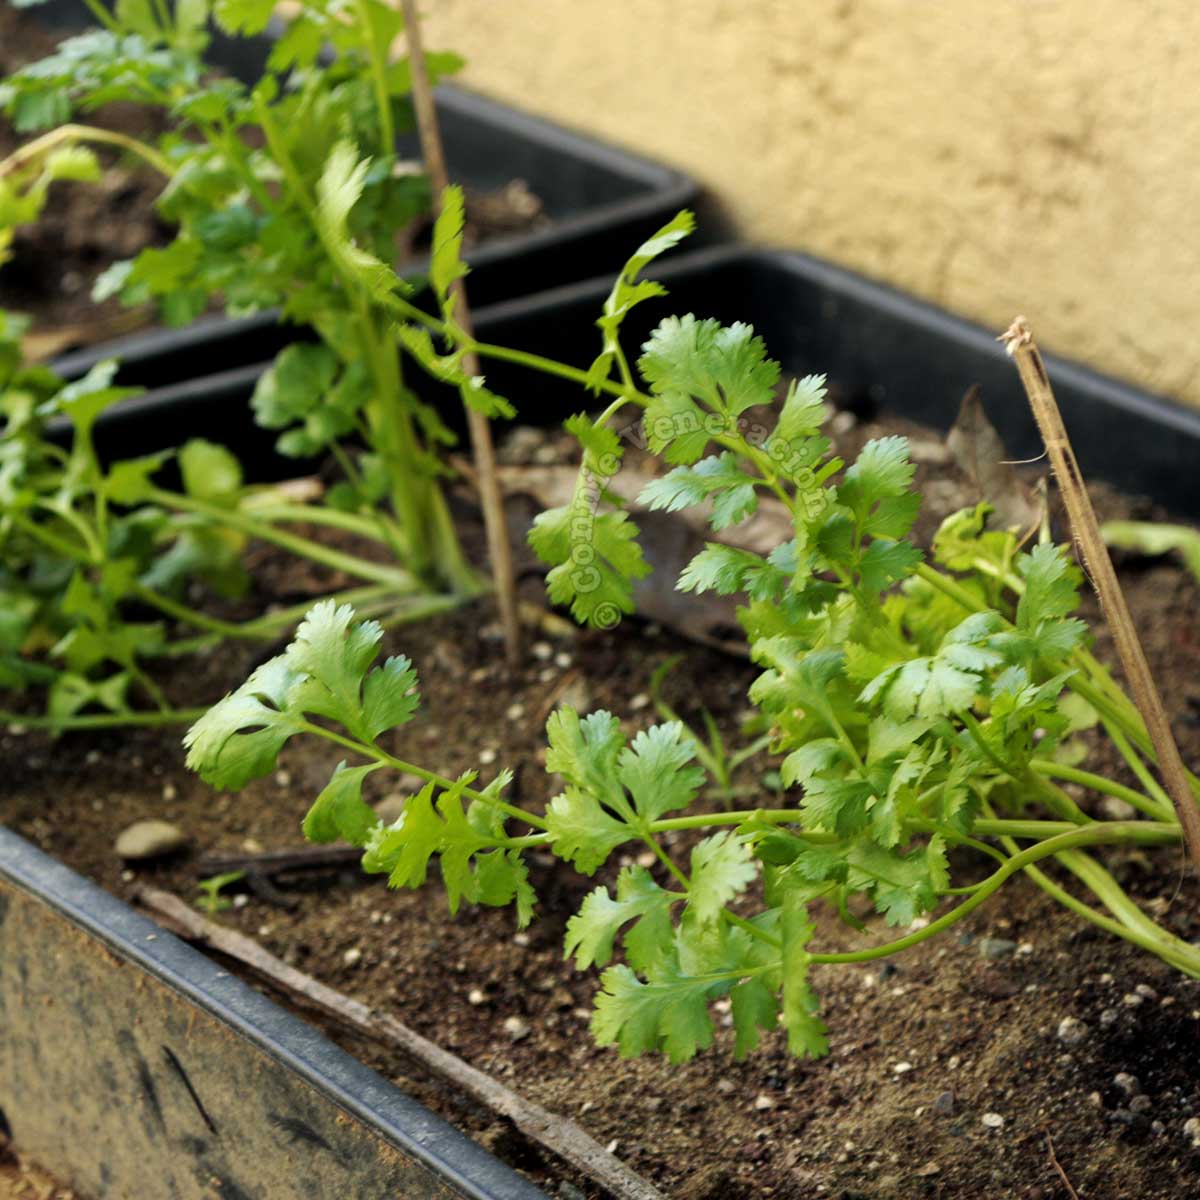 Growing cilantro / coriander in a trough